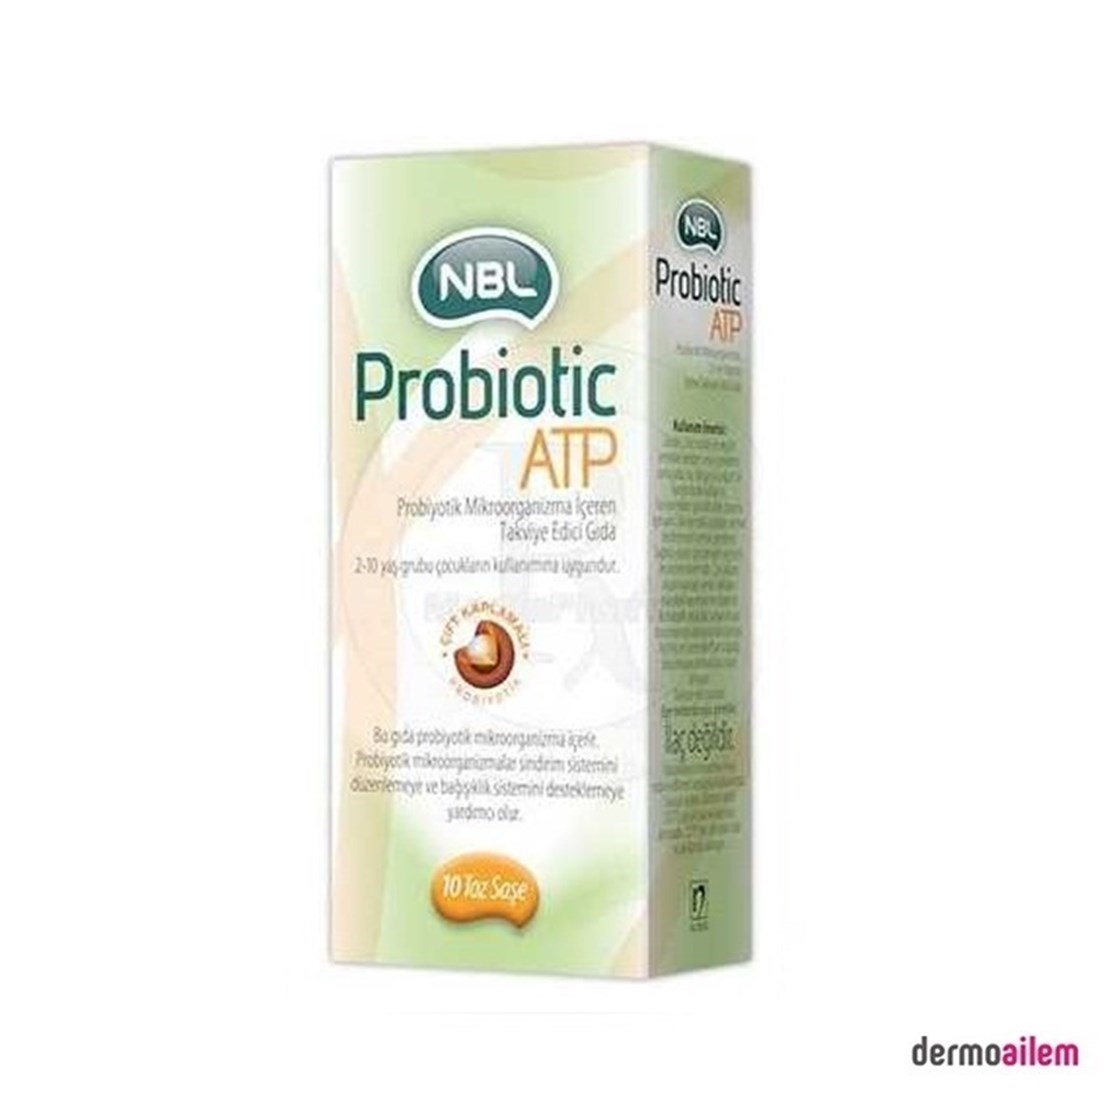 Nbl Probiotic ATP Takviye Edici Gıda 10 Toz Saşe Fiyatları İndirimli |  Dermoailem.com